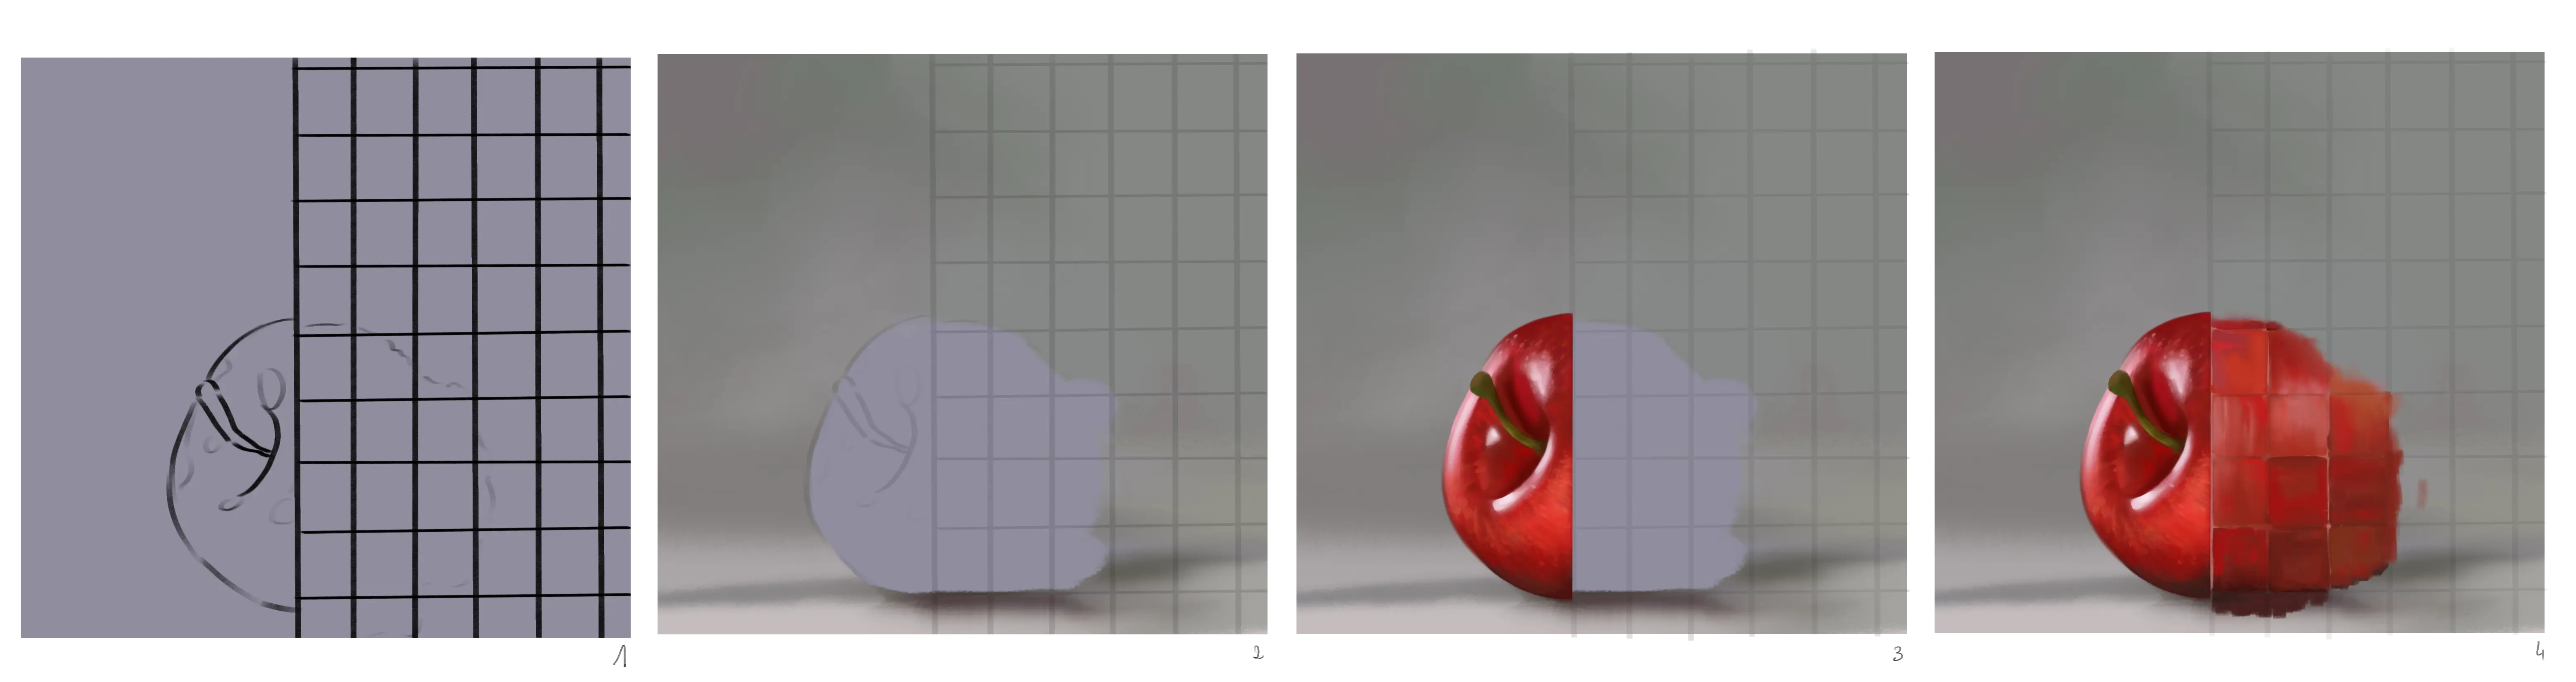 croquis d’une pomme derrière une paroi transparente